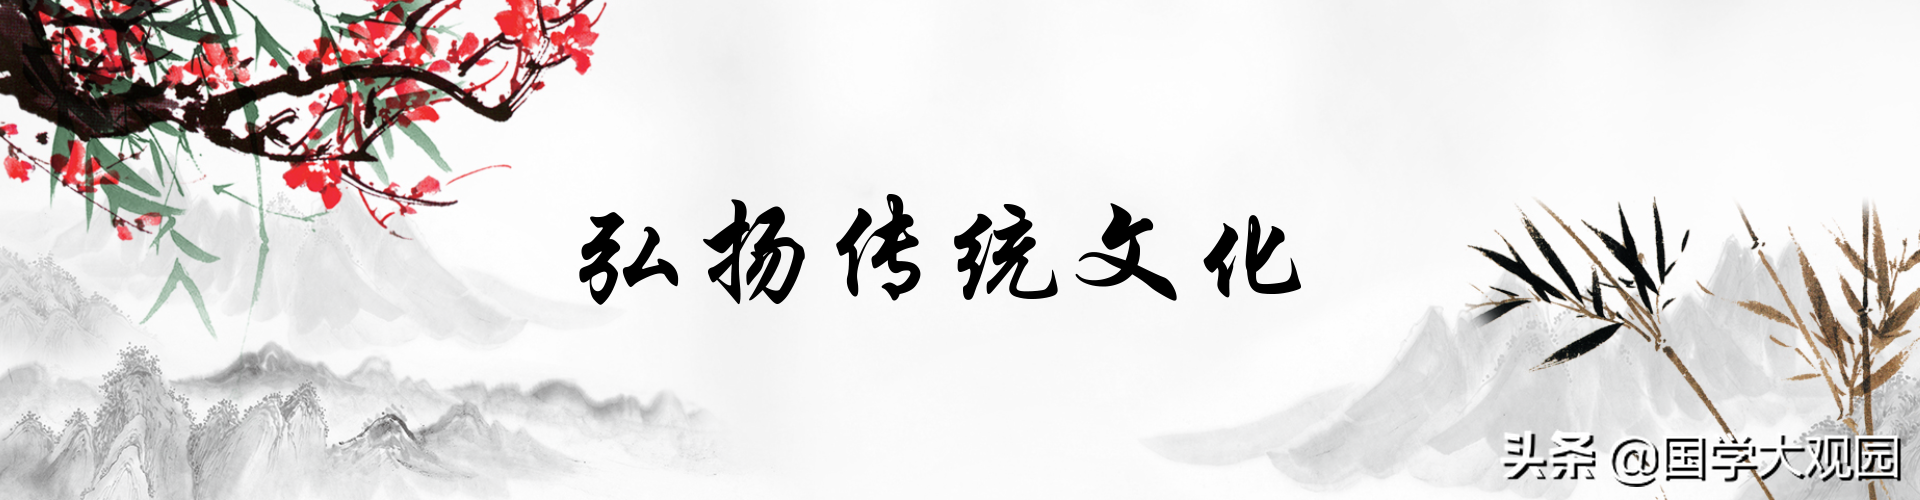 天风姤卦四爻动 国学大观园|探索中华文化之脉络，聆听世间百态之心声